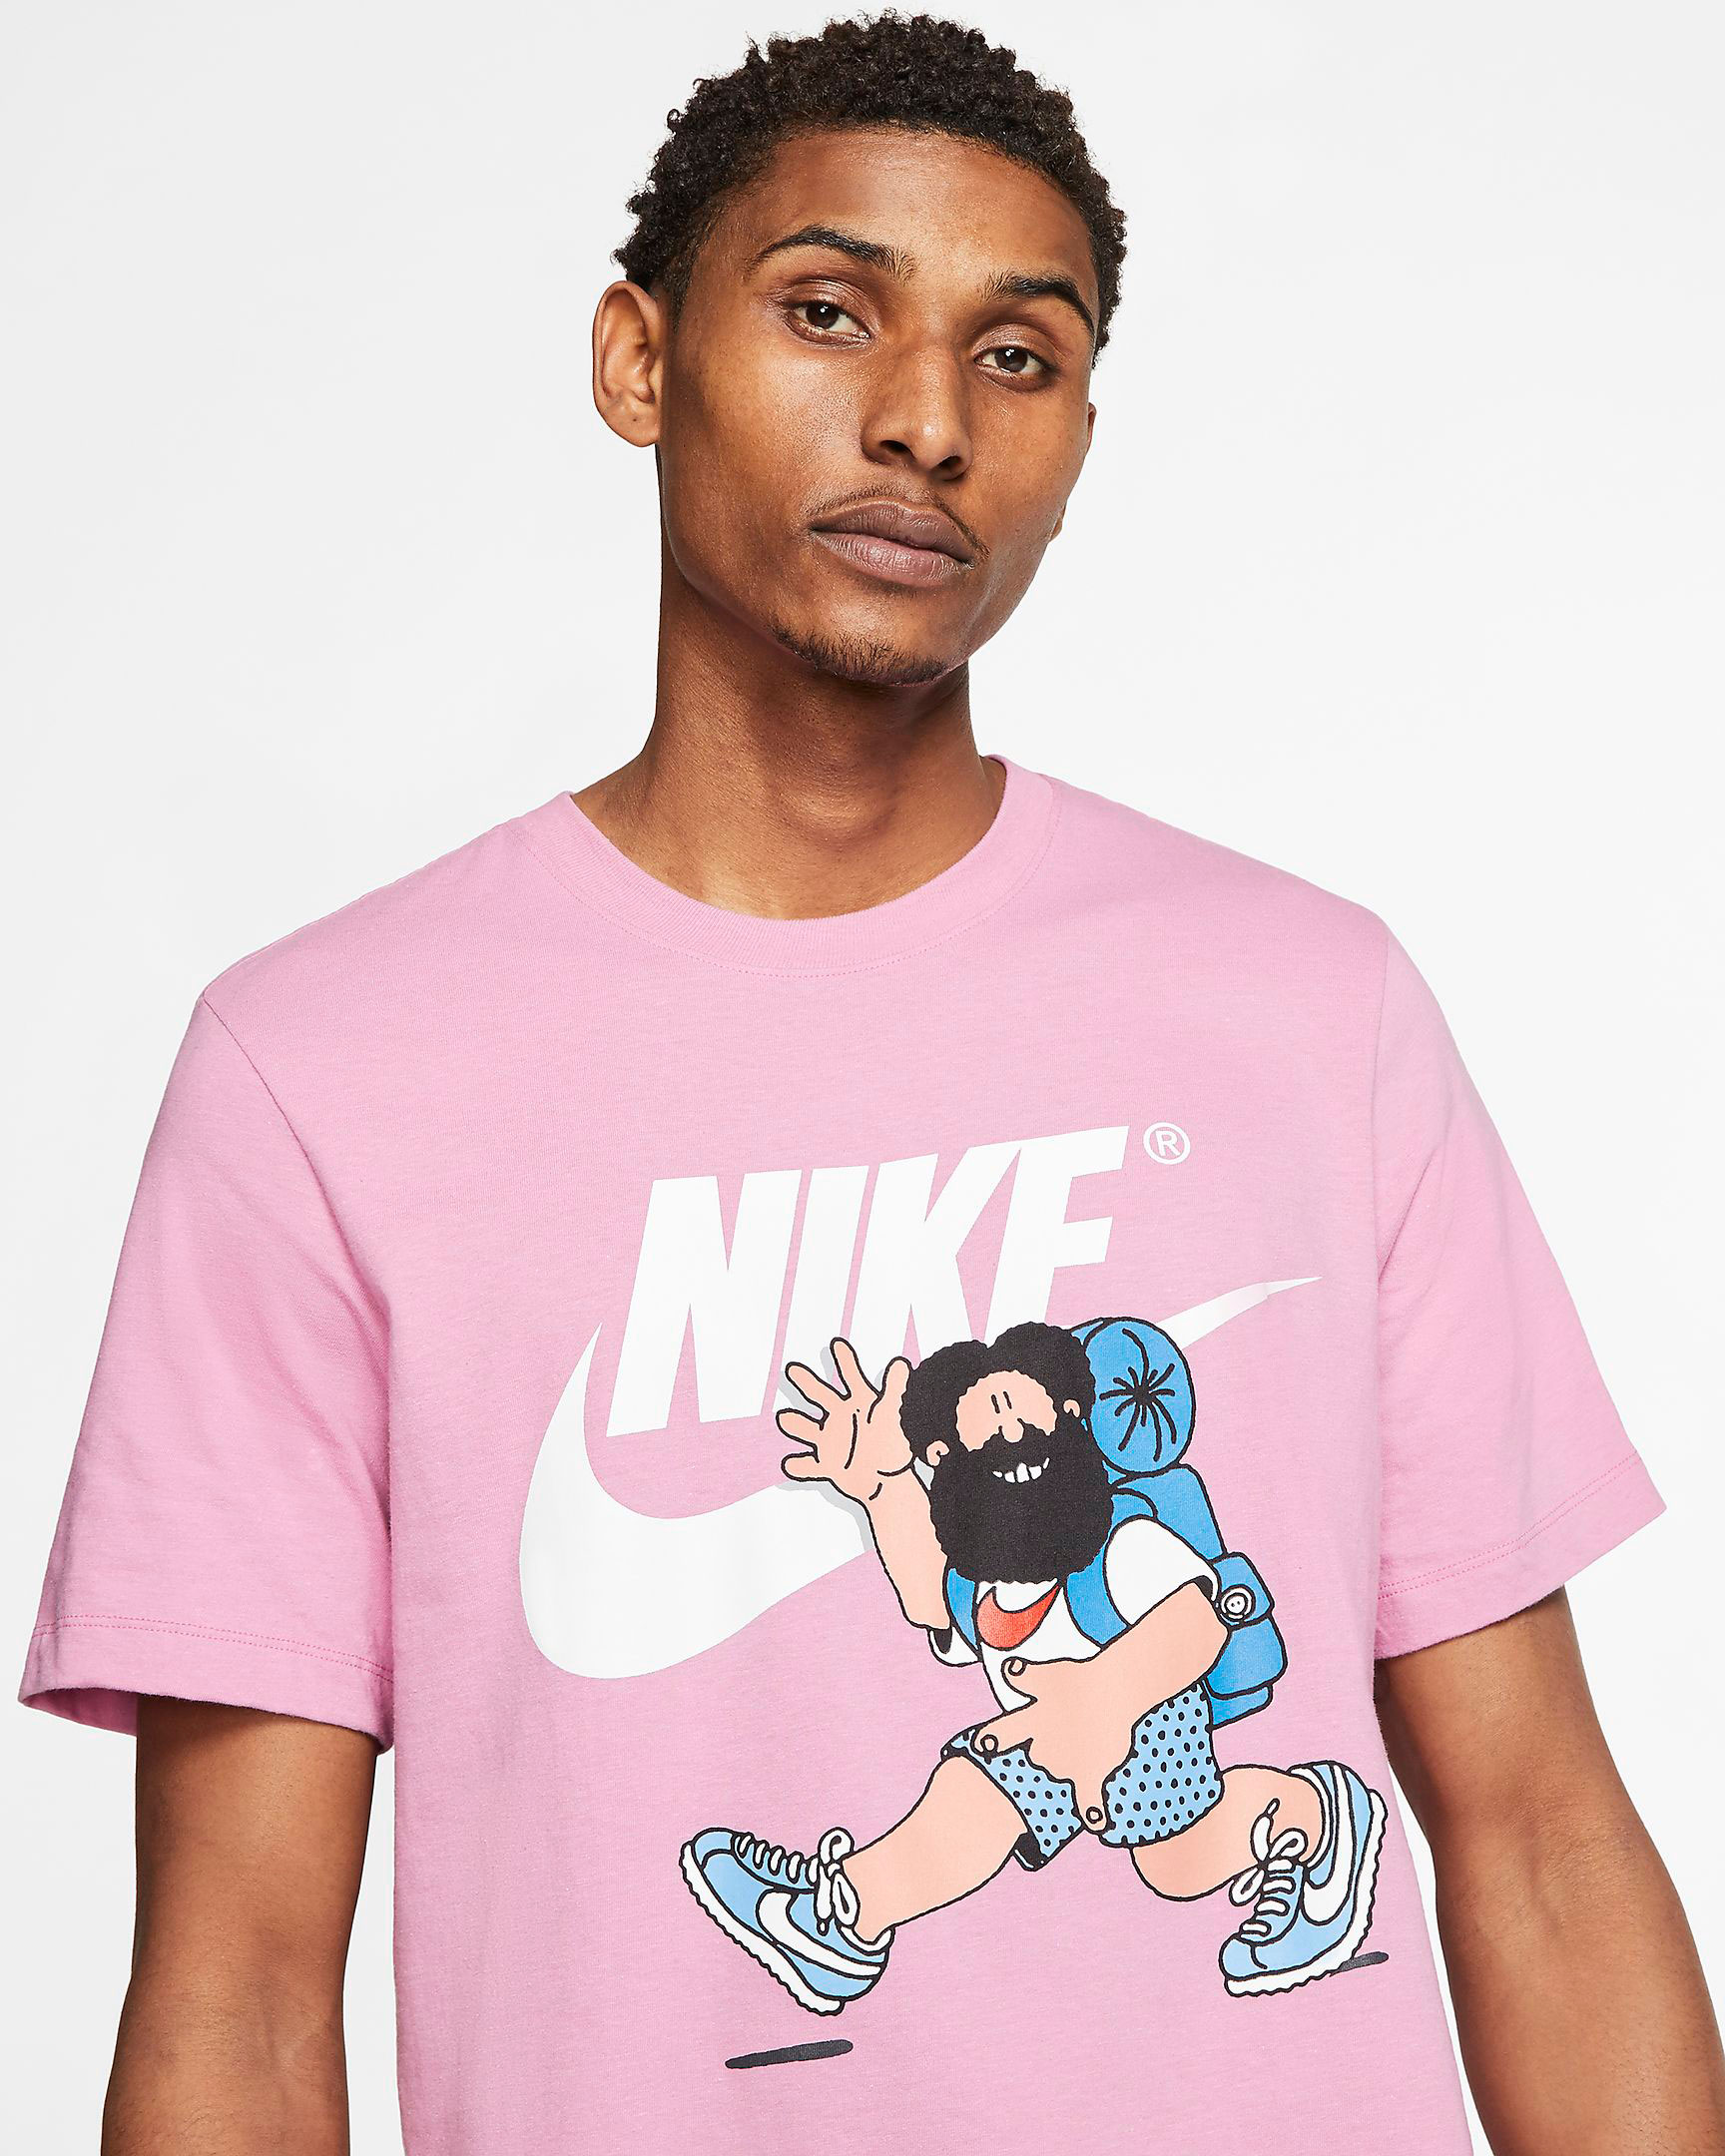 nike-hike-man-shirt-pink